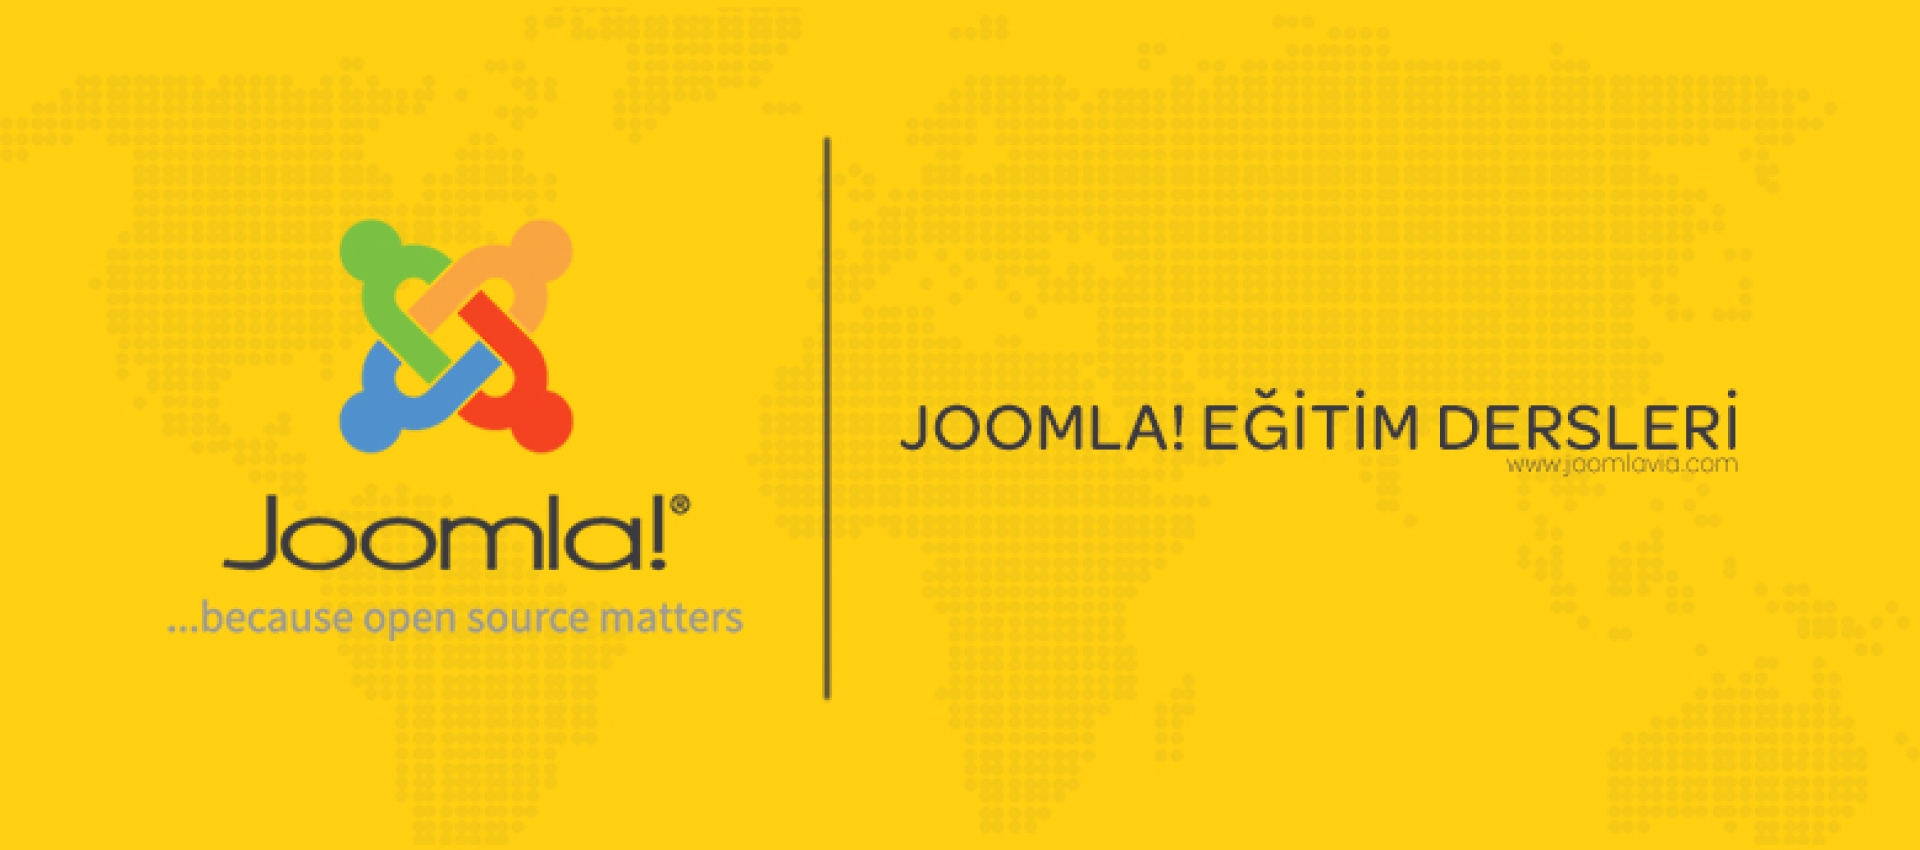 Joomla! Global Check-in Özelliği Nasıl Kullanılır?